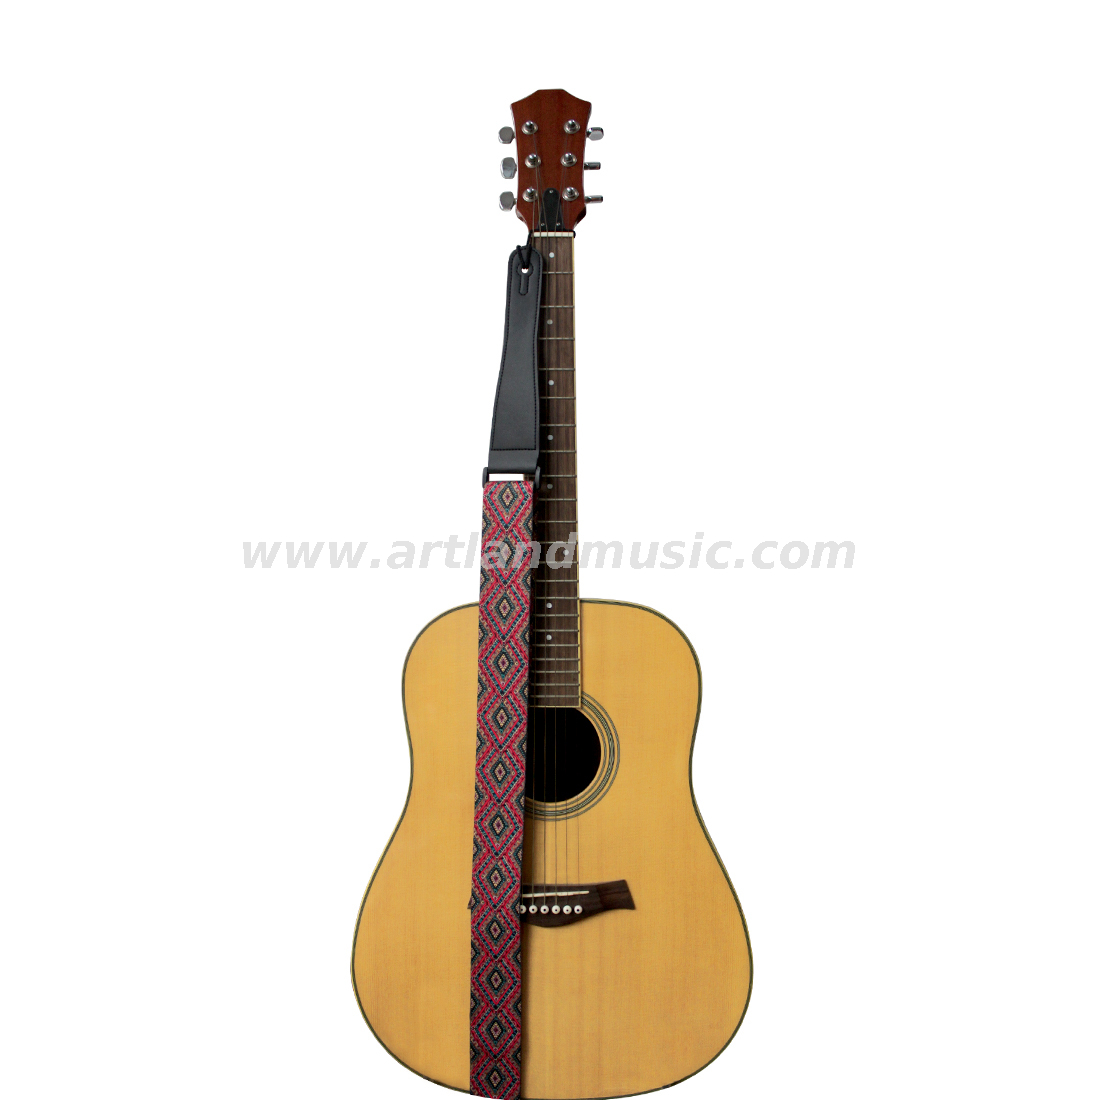 Correa de guitarra con elementos geométricos (GSG01)